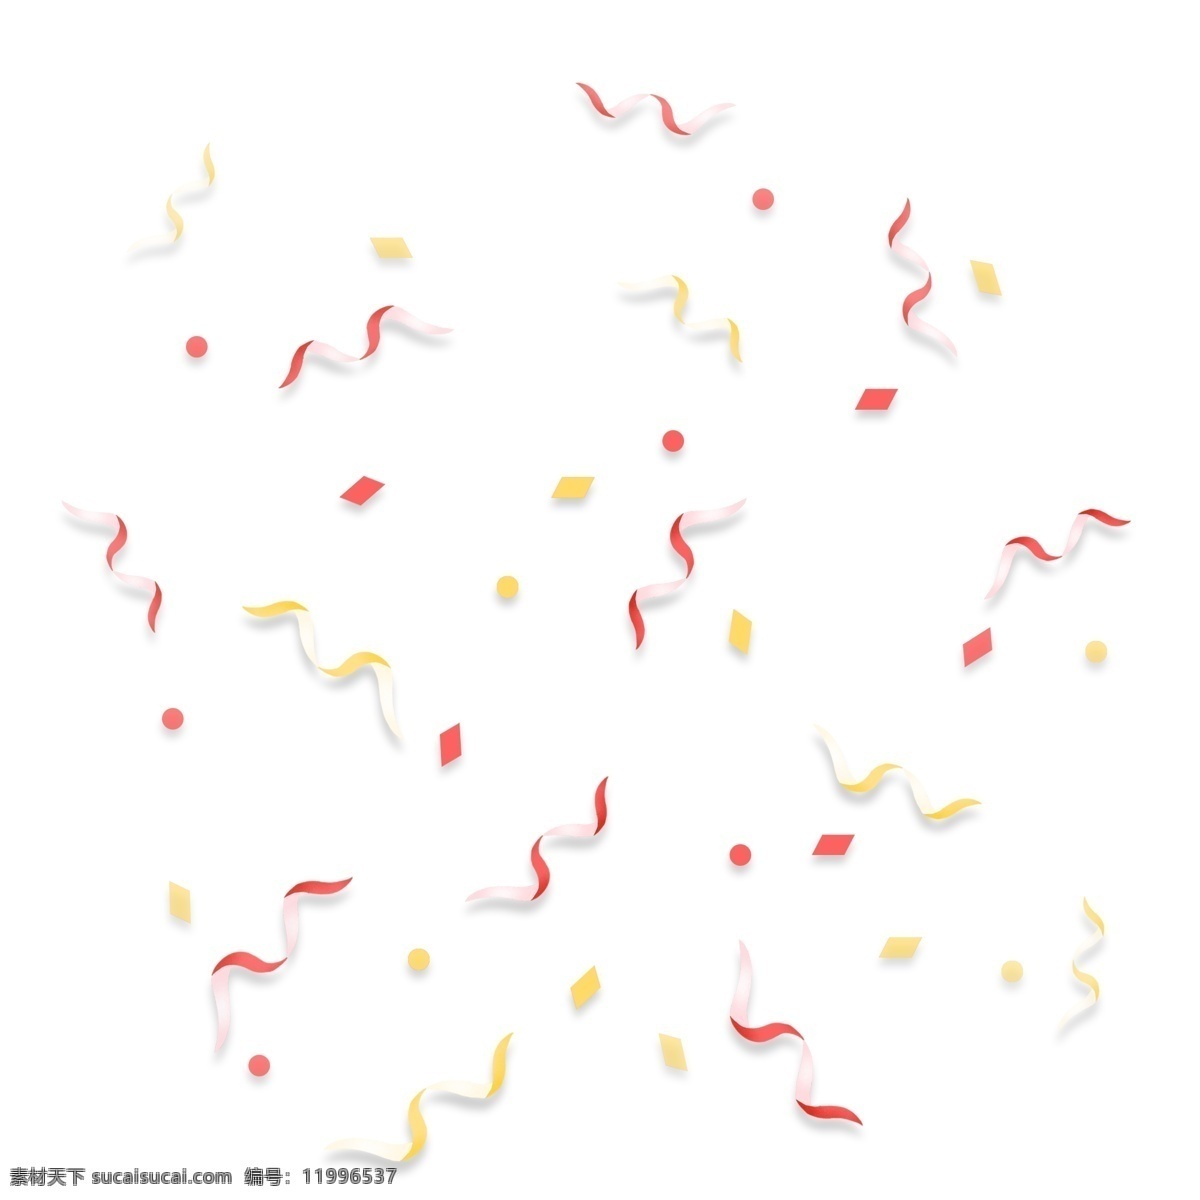 节日 活动 丝带 彩带 碎 纸 漂浮 元素 喜庆 红色 金色 庆典 彩礼 碎片 碎纸 纸片 圆点 装饰图片 小图